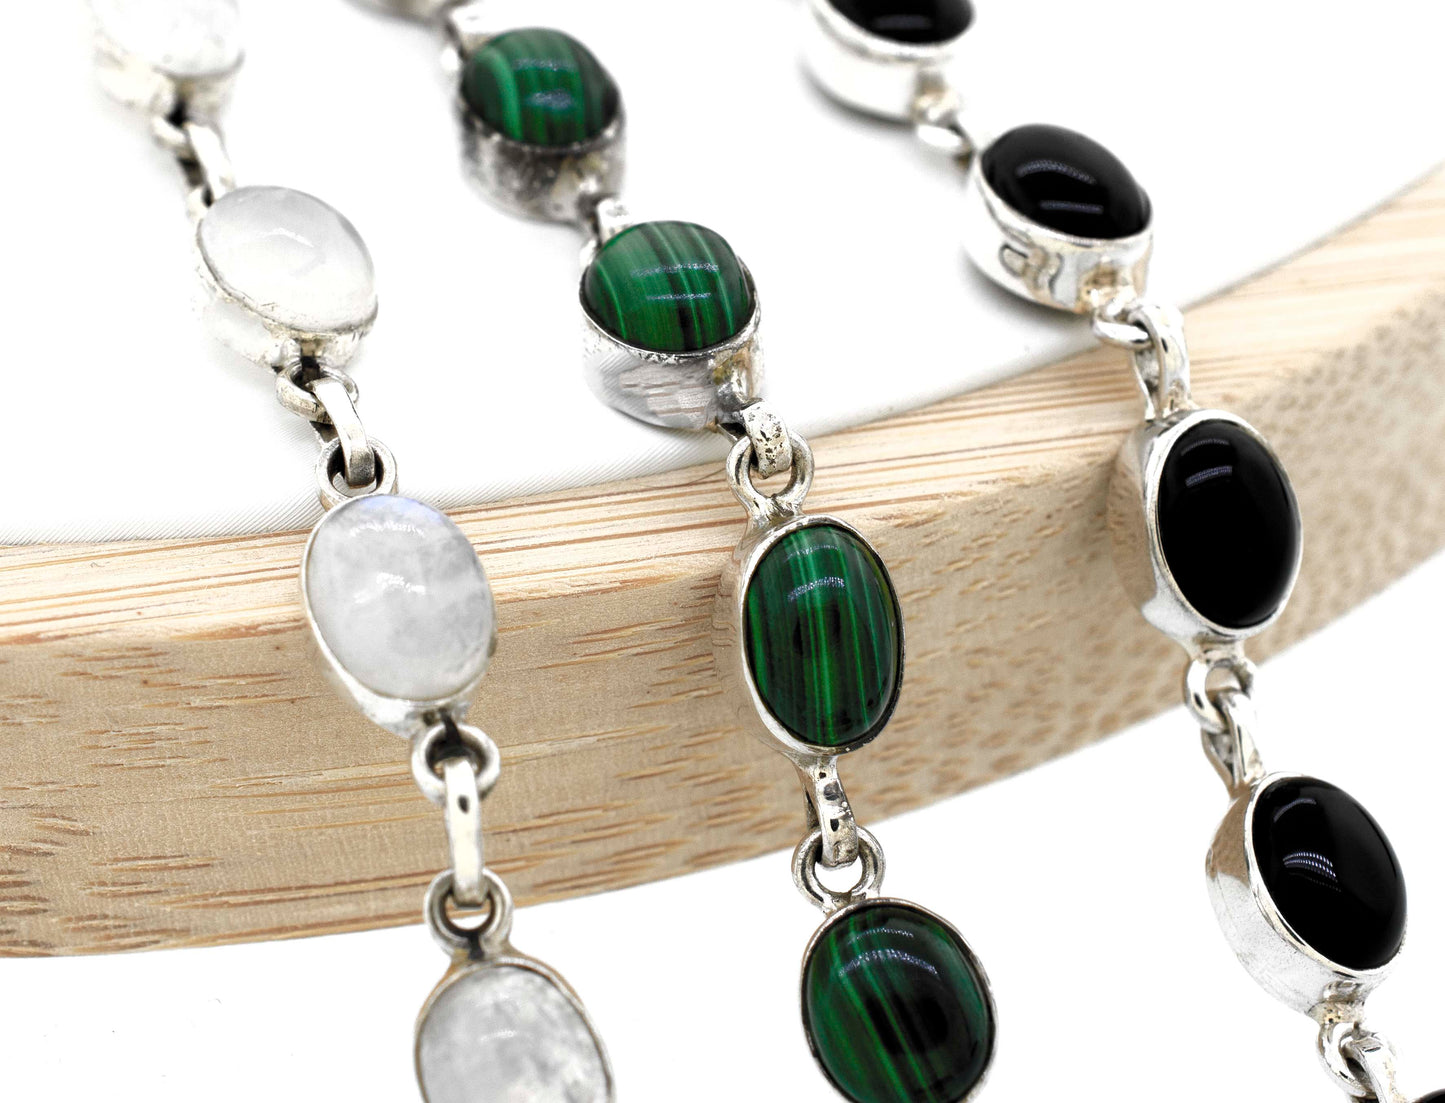 A Super Silver simple oval gemstone bracelet adorned with elegant black and white gemstones.